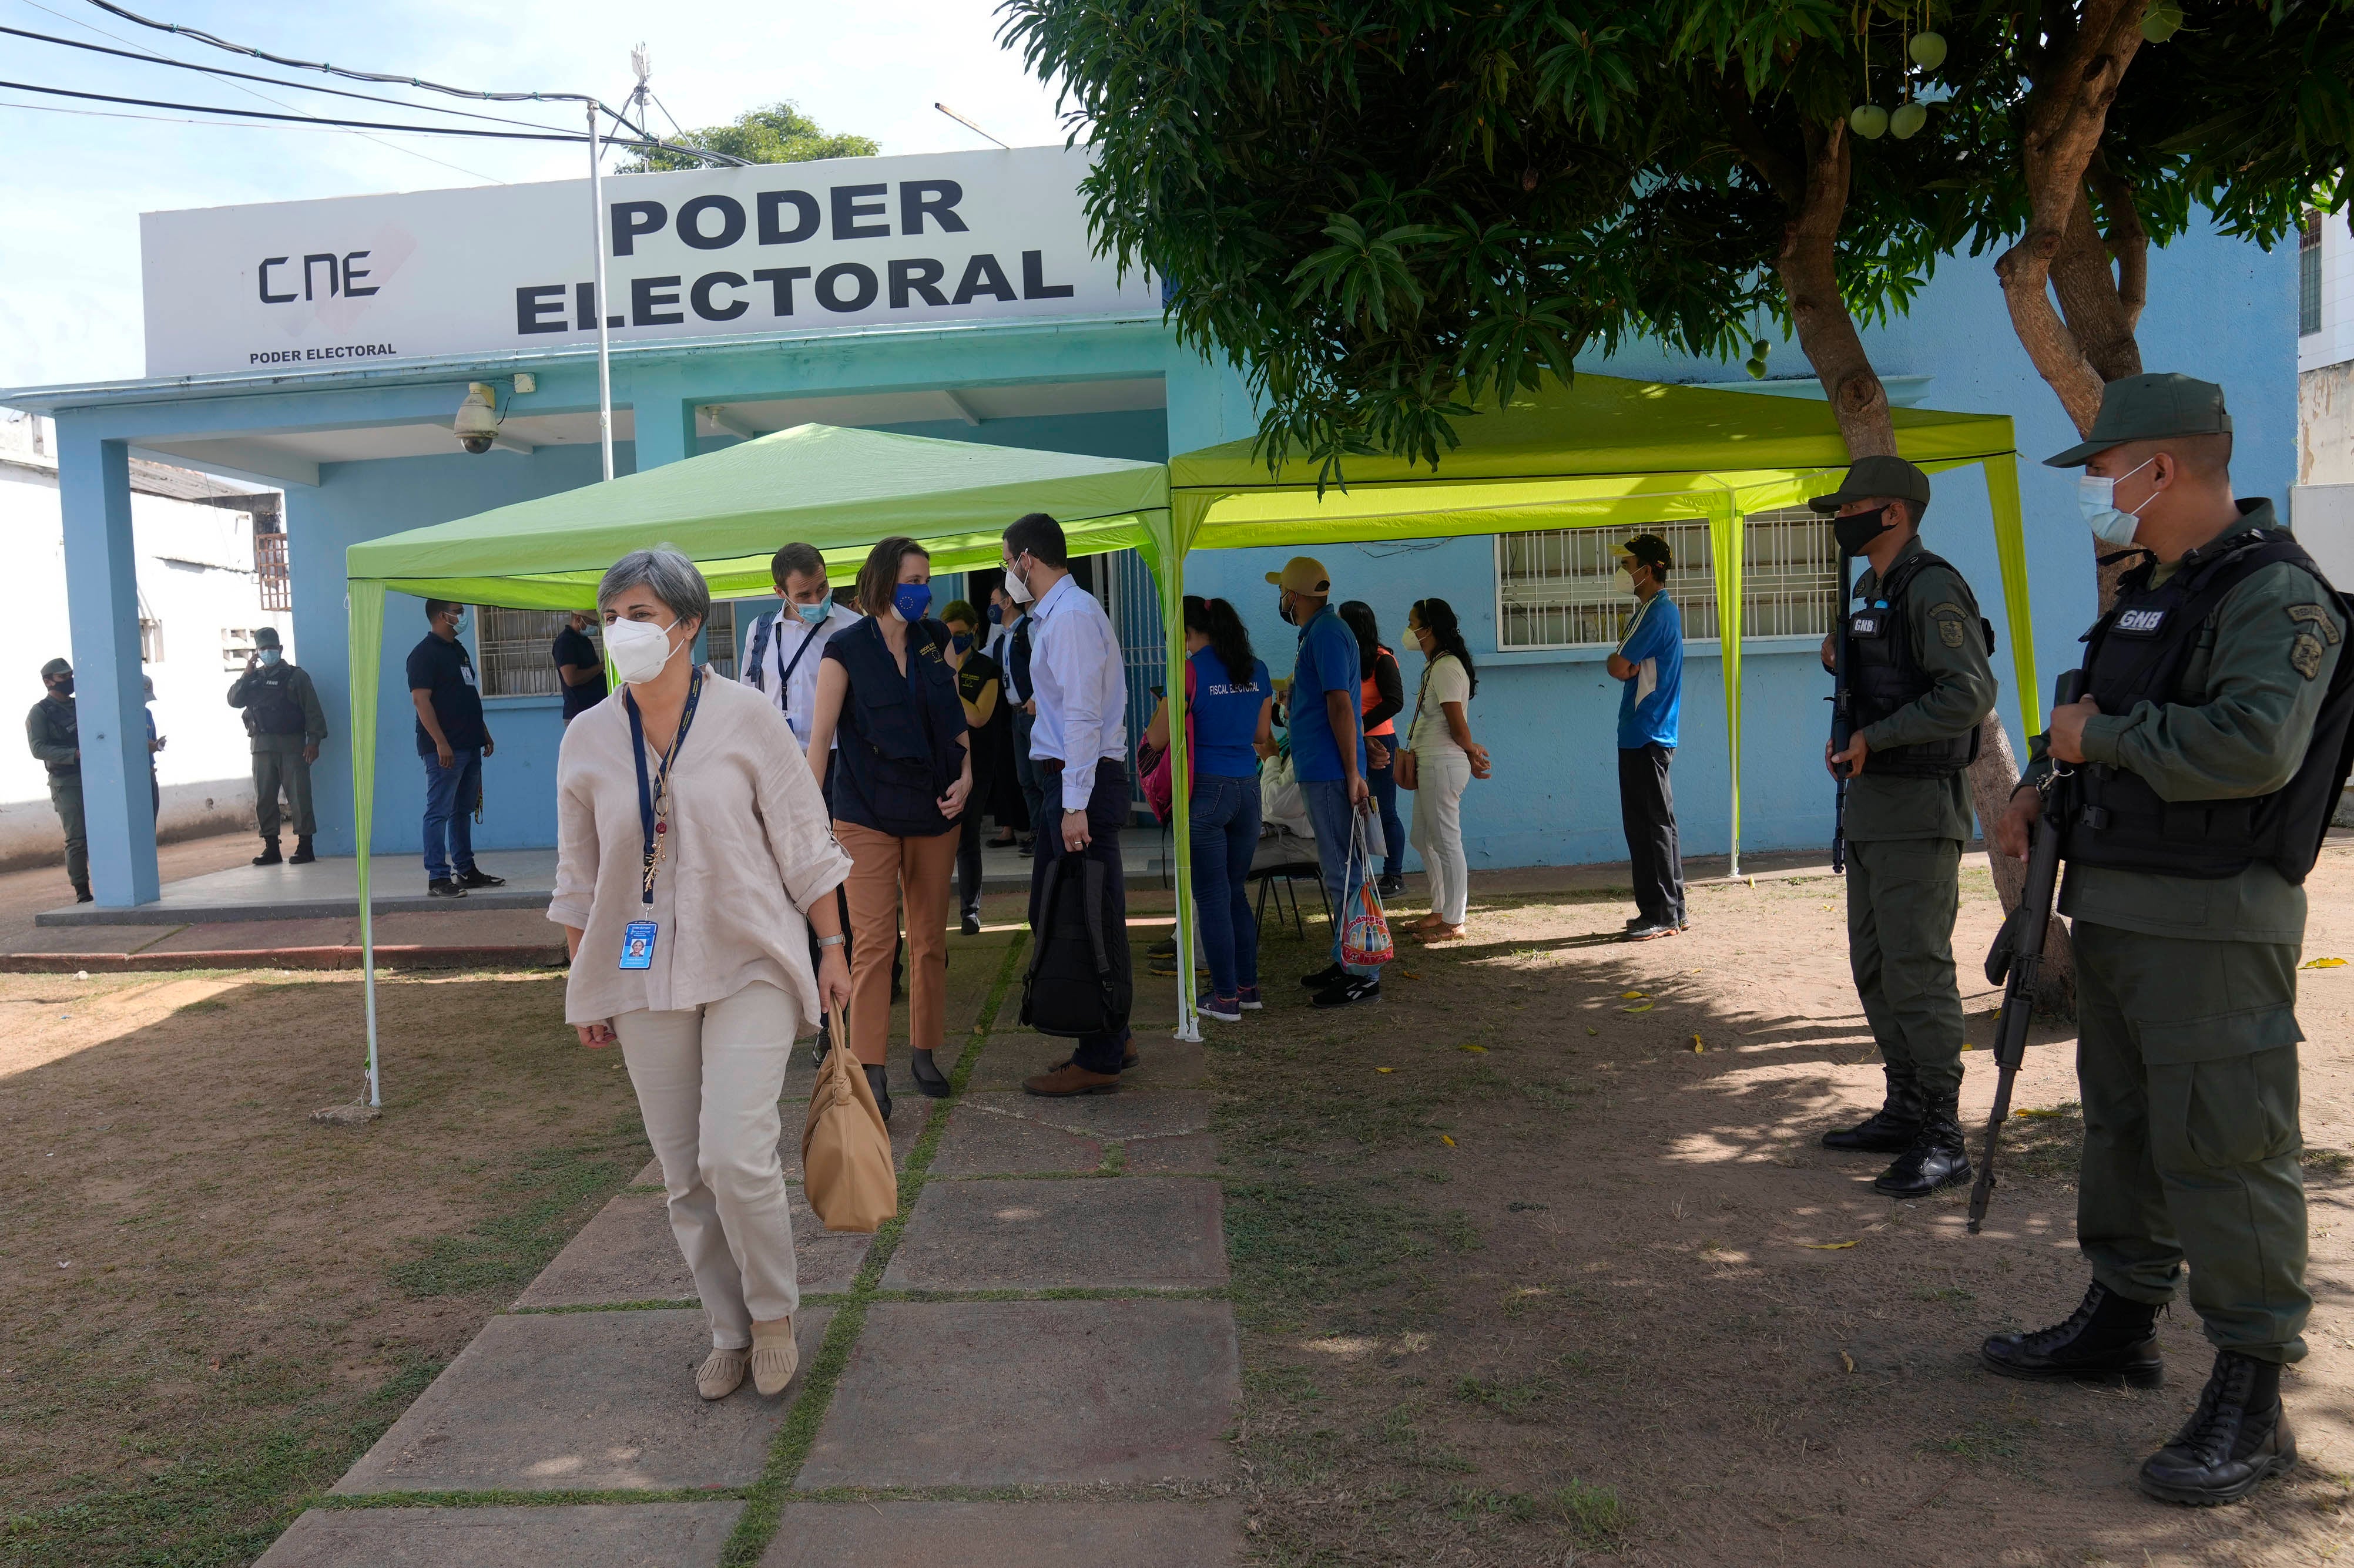 Isabel Santos, al frente, miembro del Parlamento Europeo y jefa de la Misión de Observación Electoral de la UE a Venezuela de 2021, sale de la sede del Consejo Nacional Electoral antes de las elecciones regionales en Ciudad Bolívar, Venezuela, el 17 de noviembre de 2021.